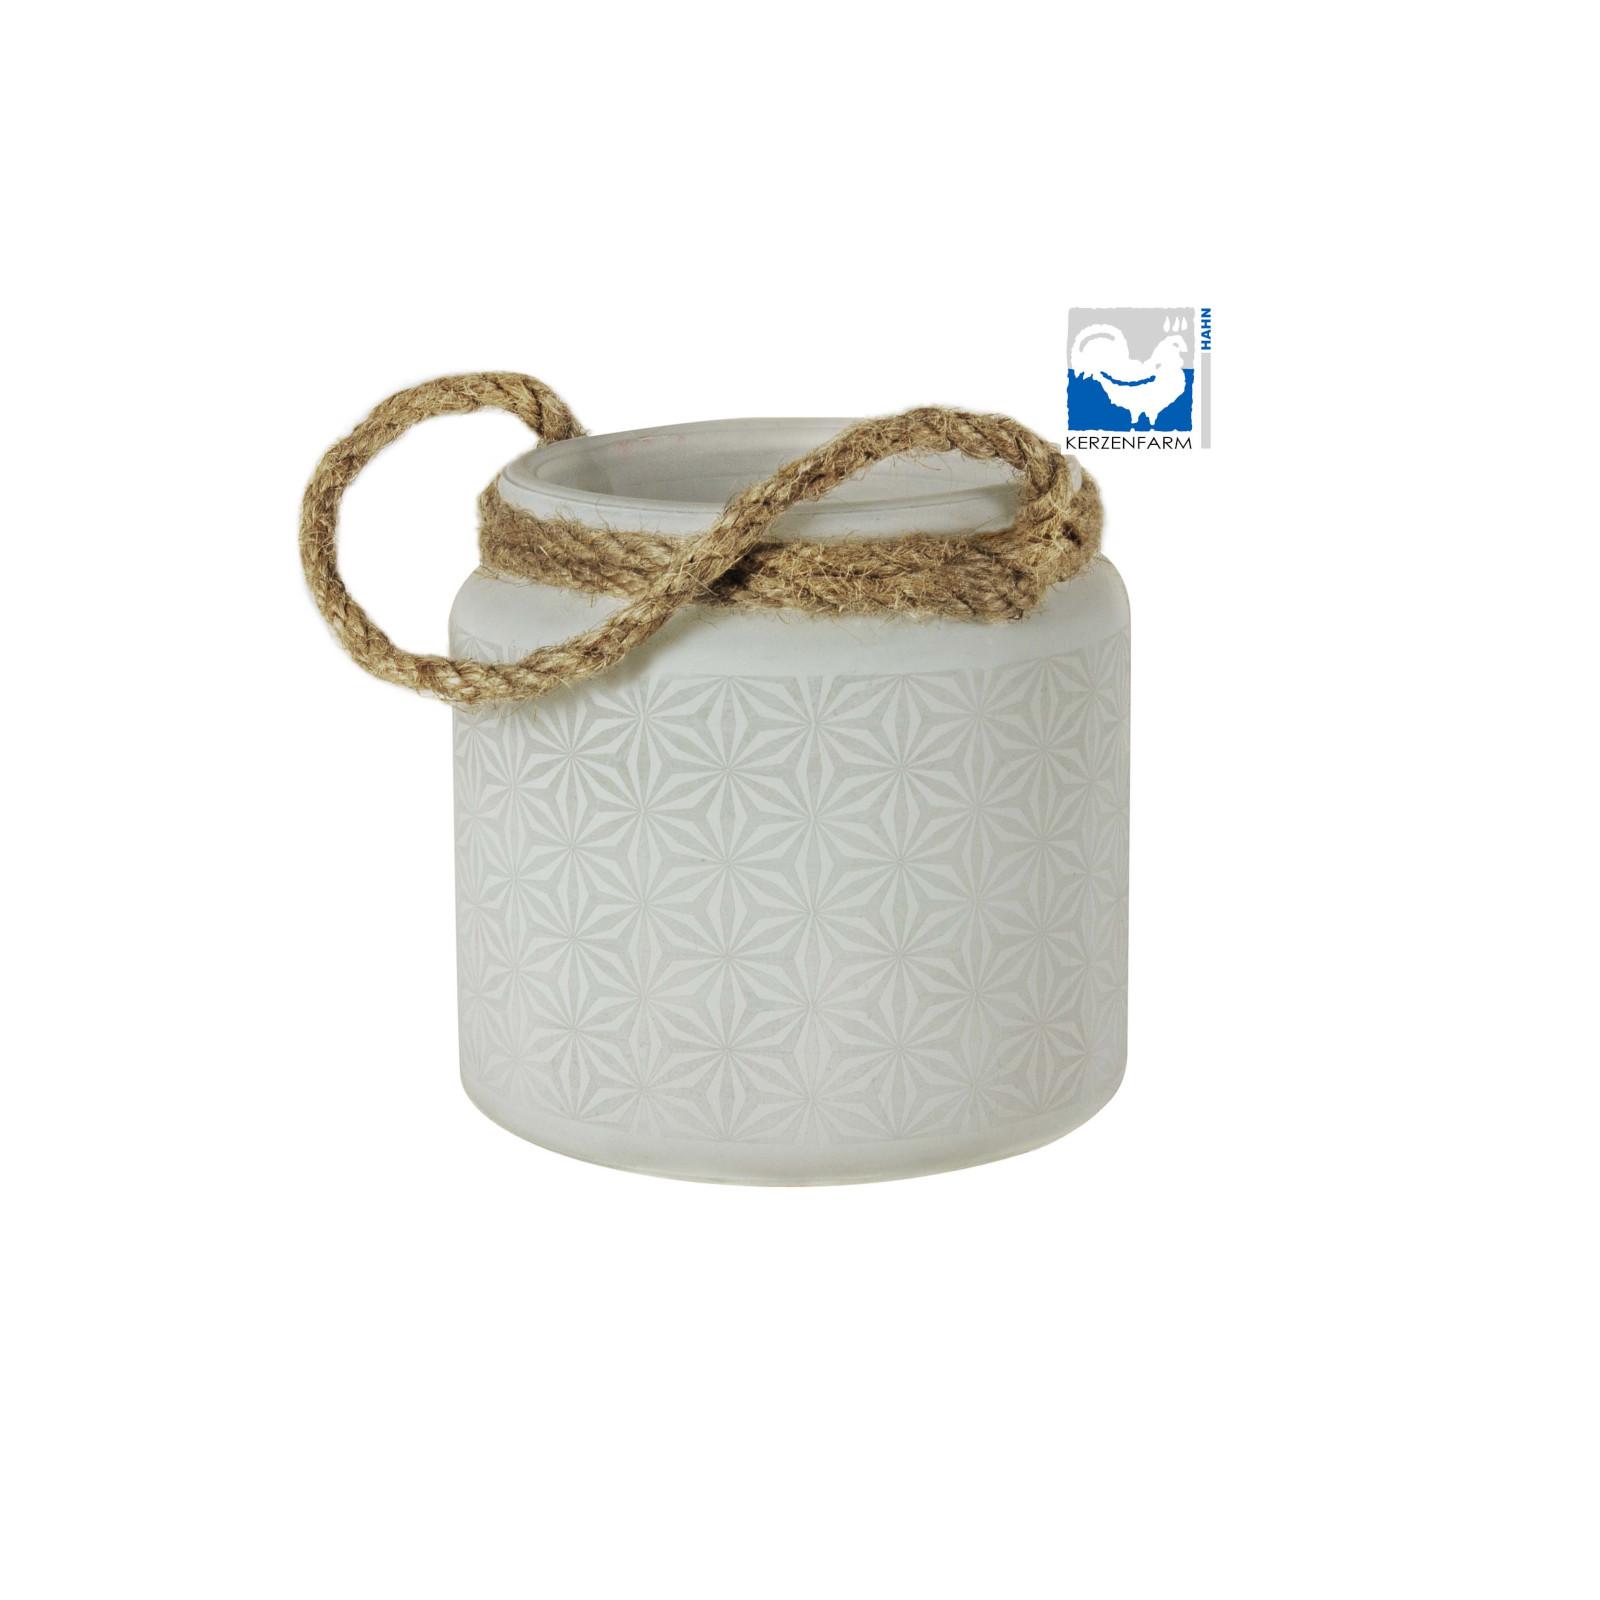 Kerzenfarm Skleněný svícen na čajové svíčky bílý 1 ks, 9,5 cm